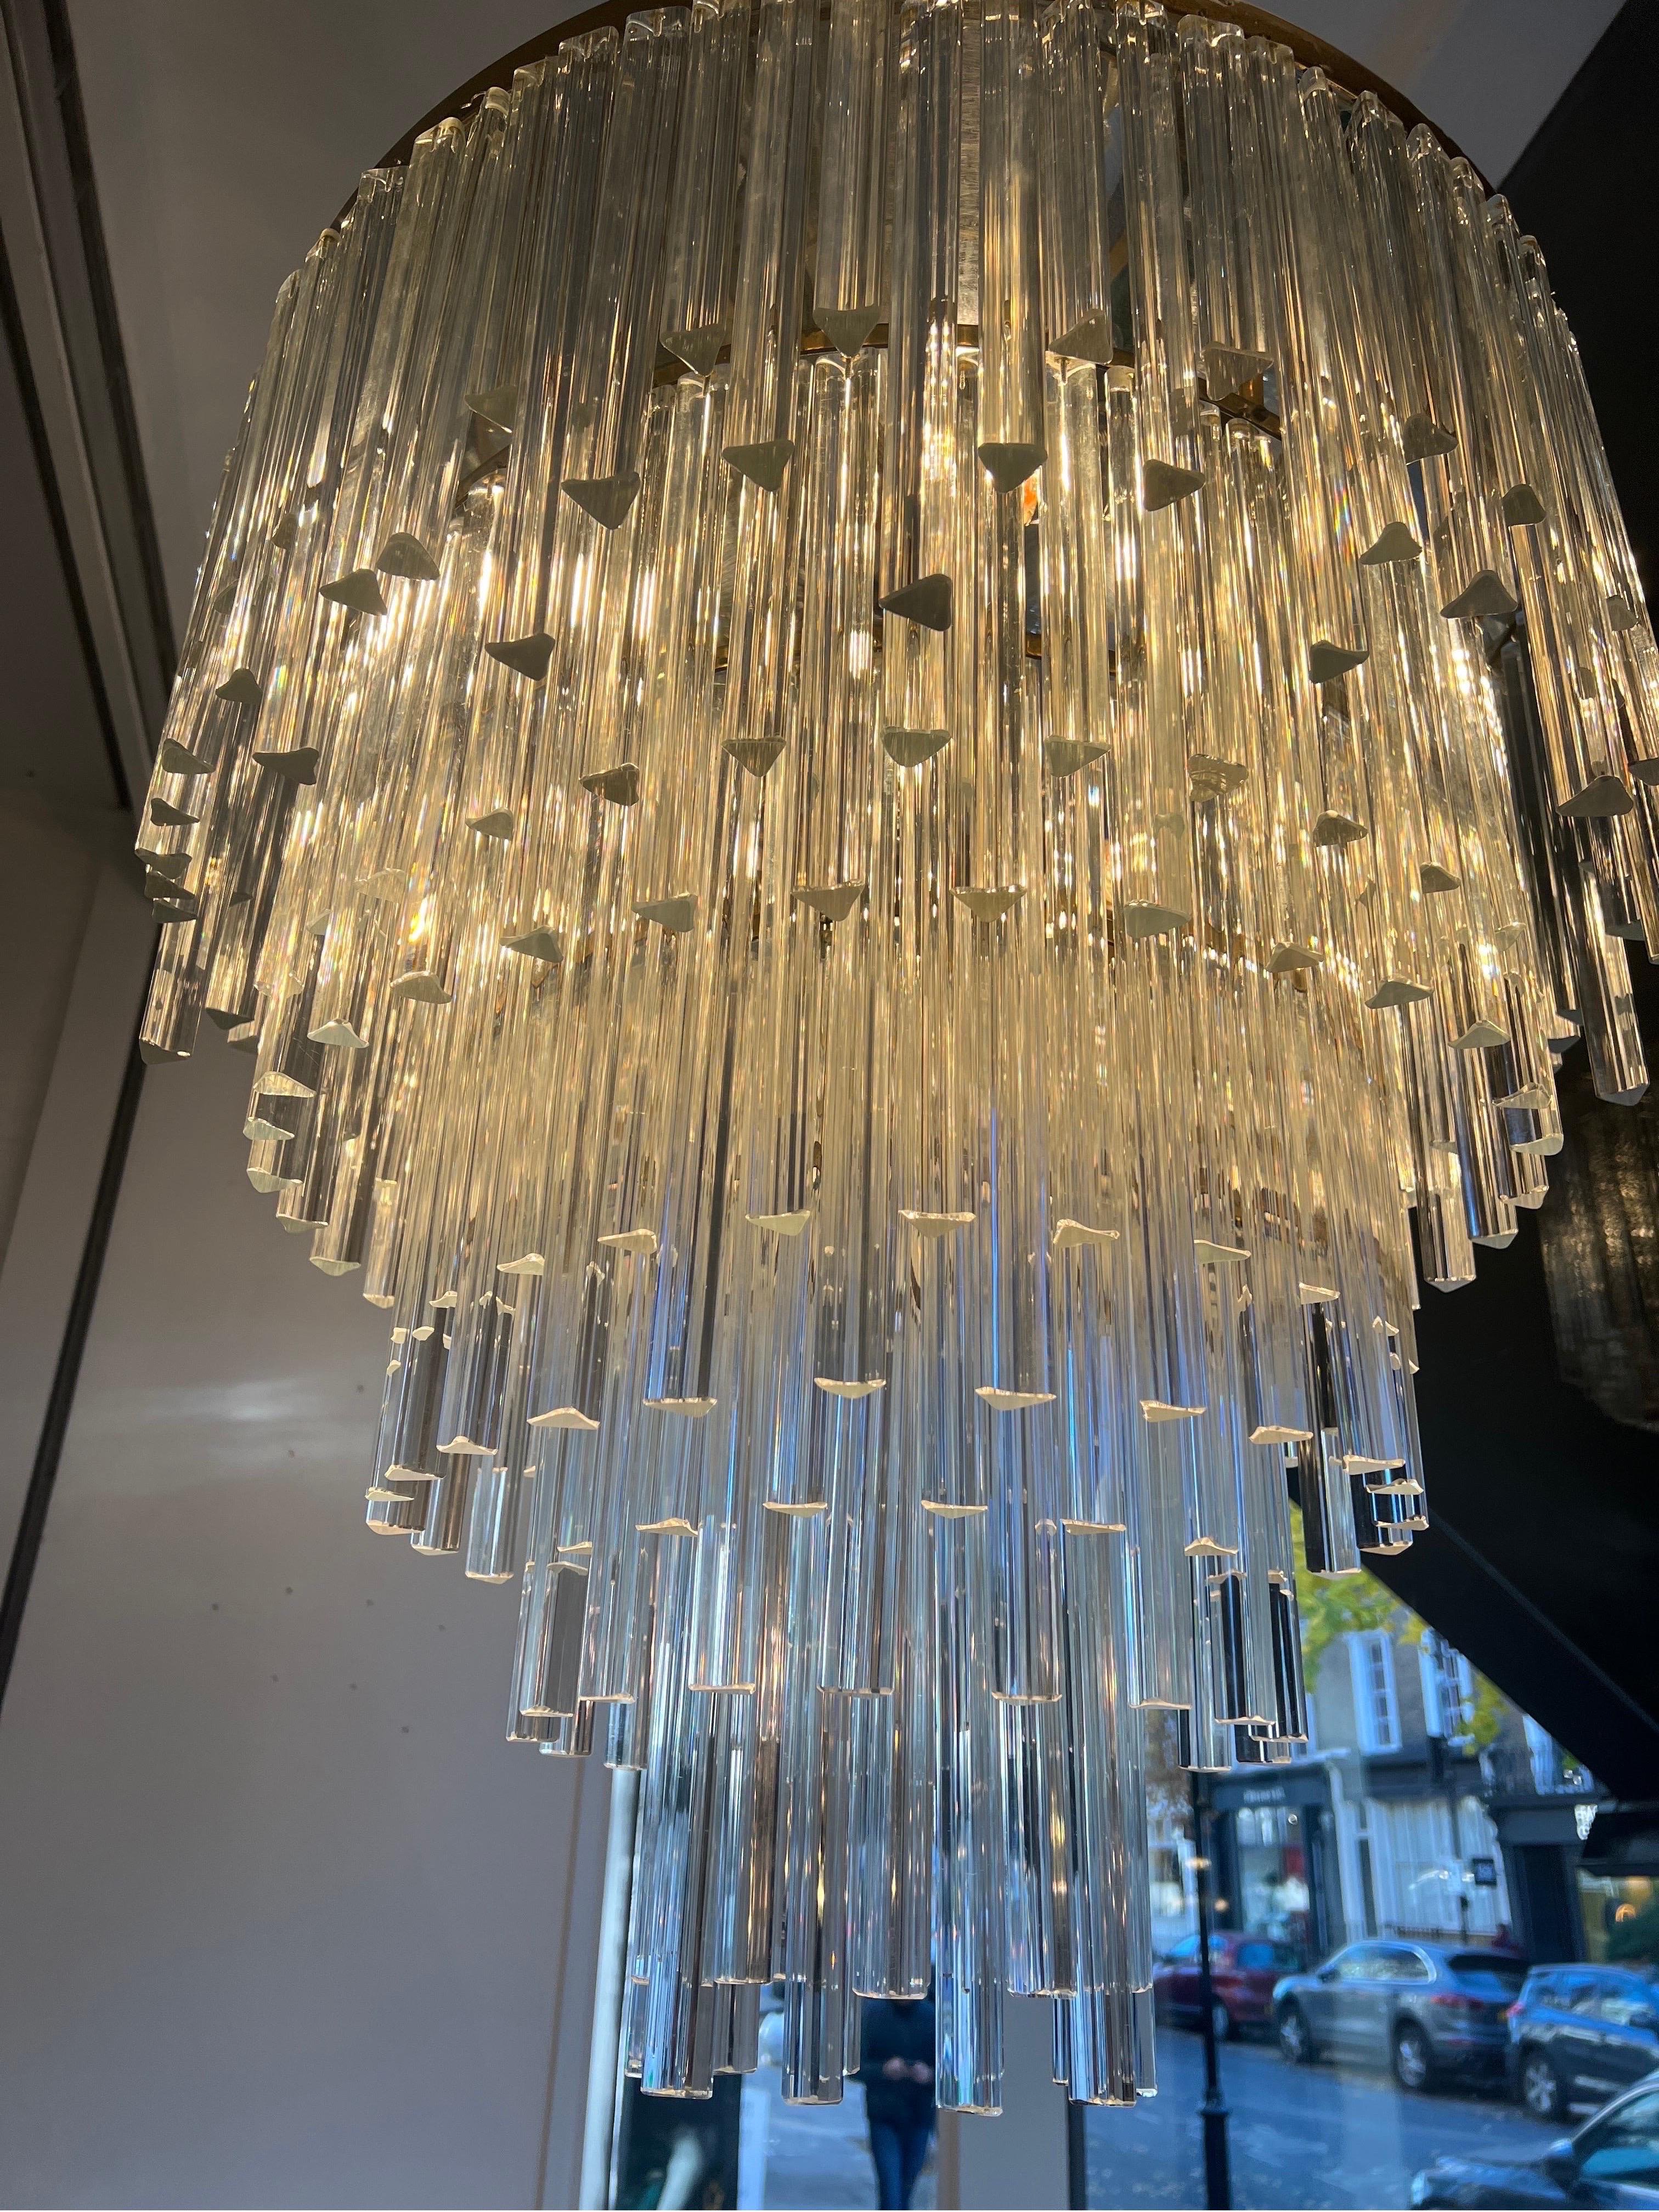 Un remarquable lustre en cascade à cinq niveaux composé de 300 verres de Murano taillés à la main en trois tailles différentes. La structure est en laiton avec une plaque en miroir au sommet permettant à la lumière de se refléter progressivement sur